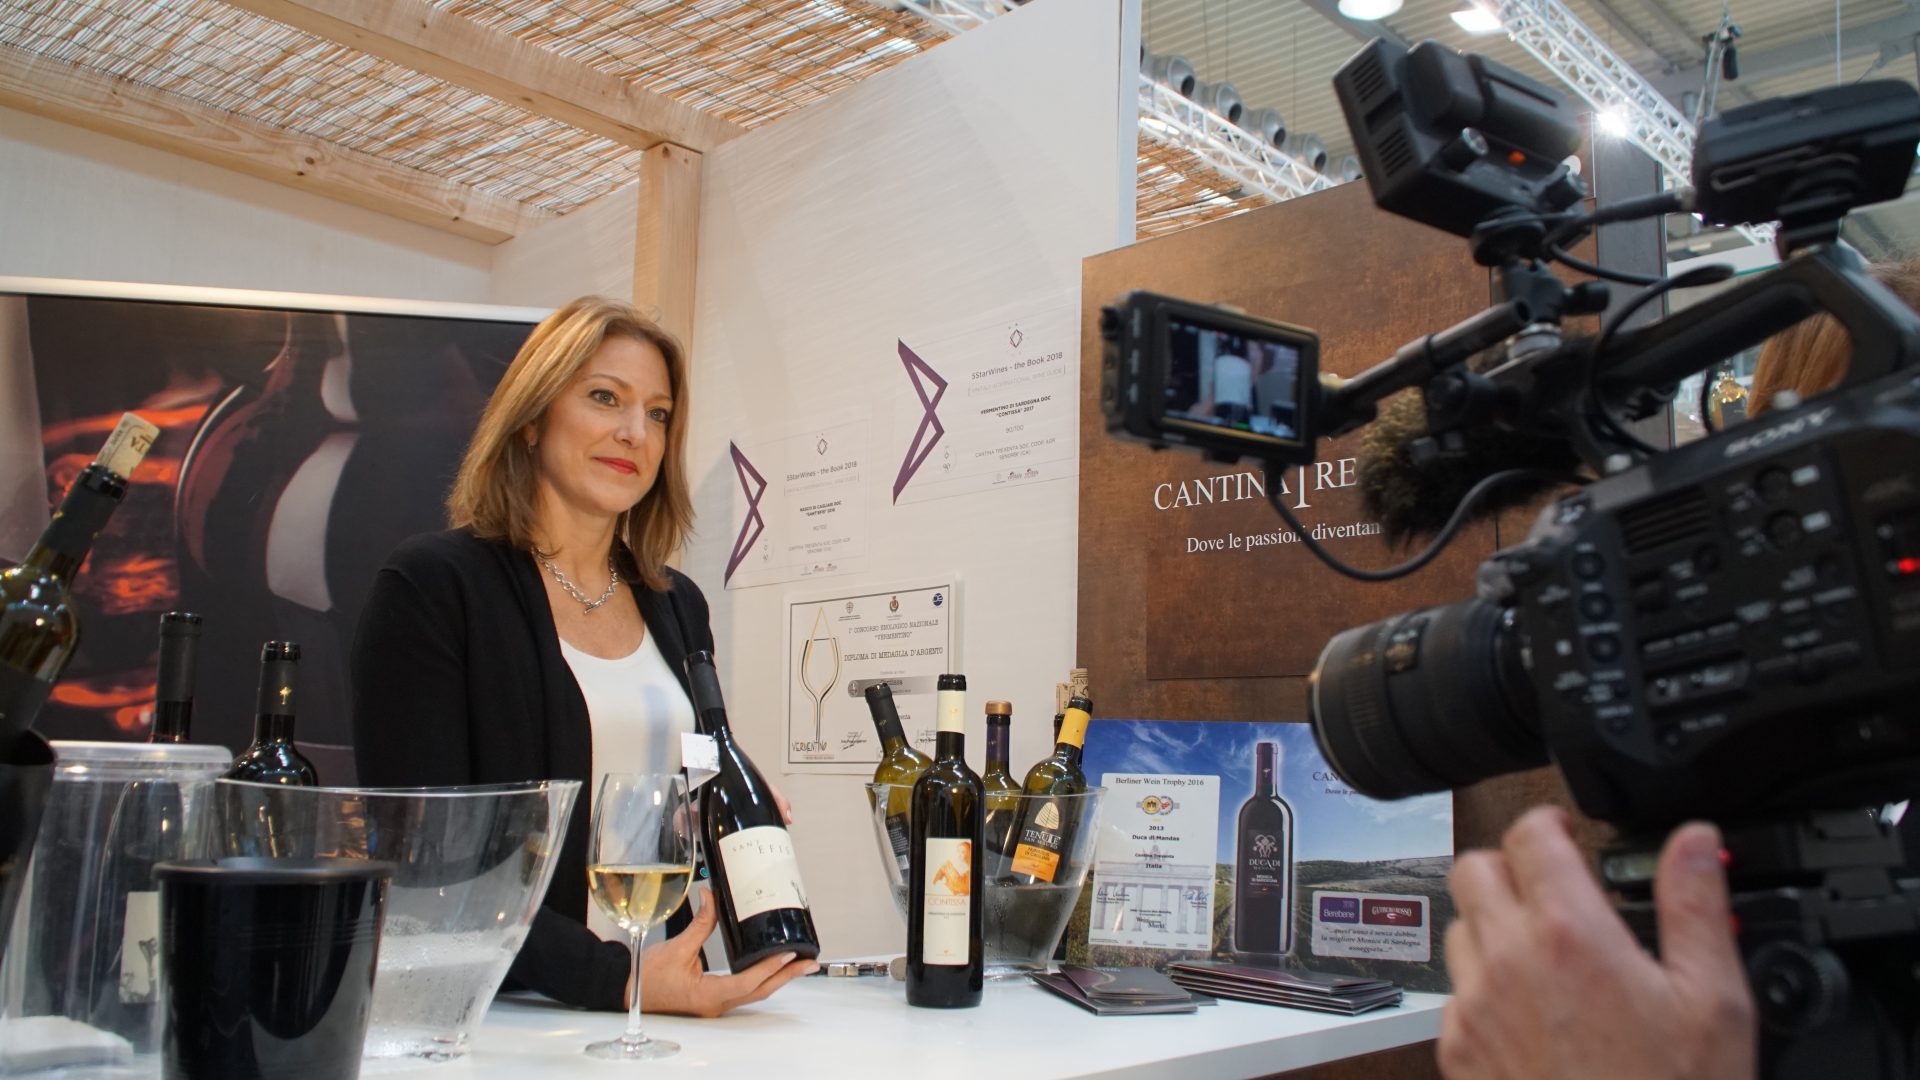 The Winery Vinitaly Verona